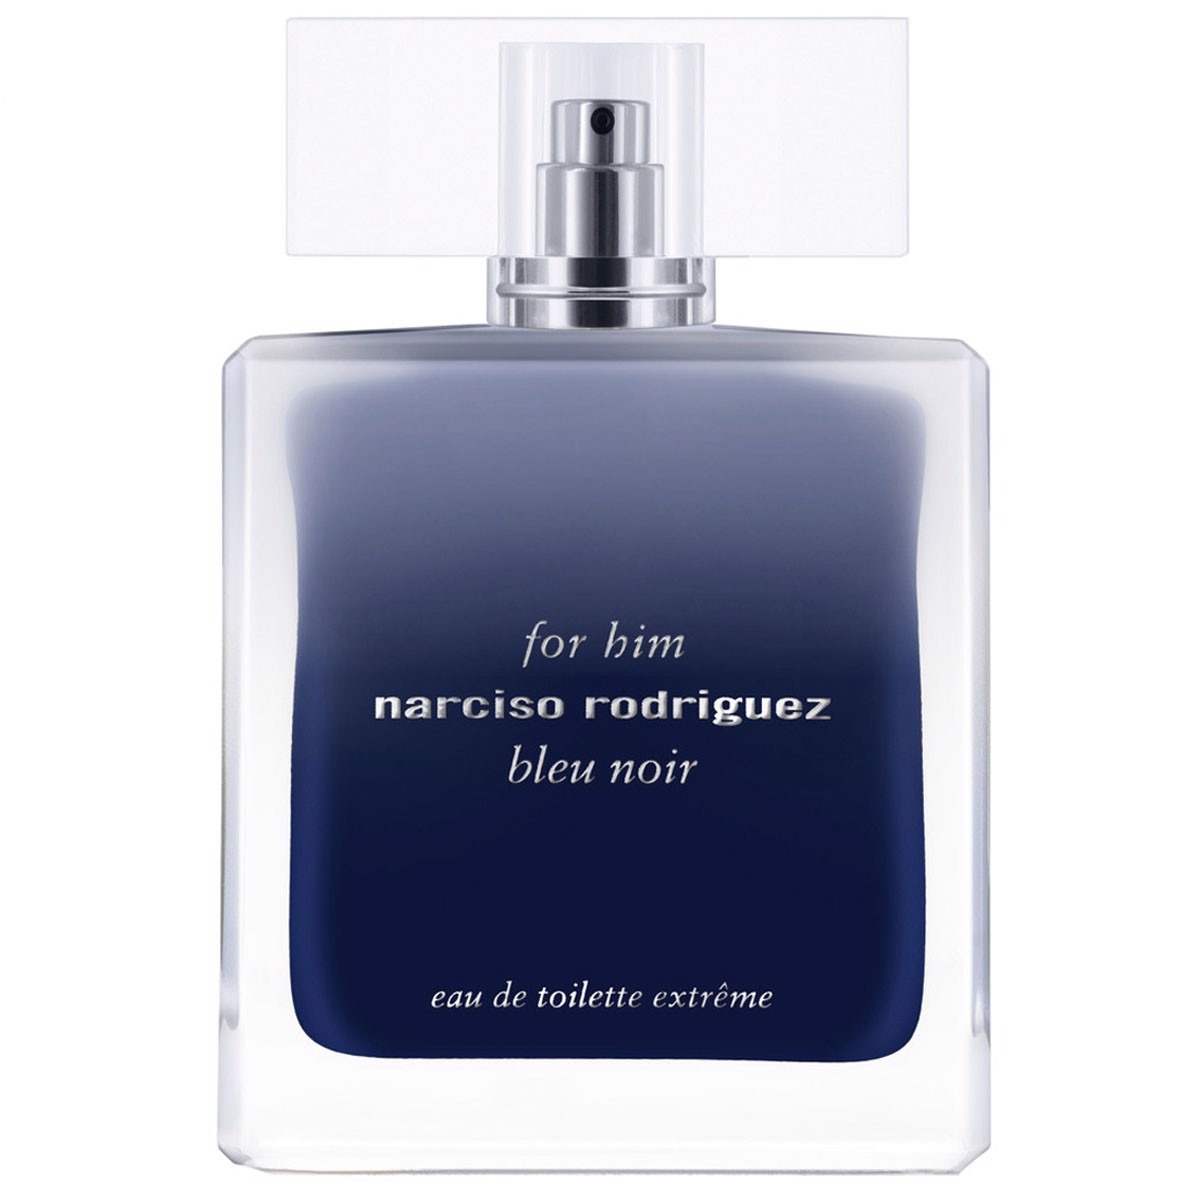 Narciso Rodriguez Bleu Noir For Him Extreme Eau De Toilette